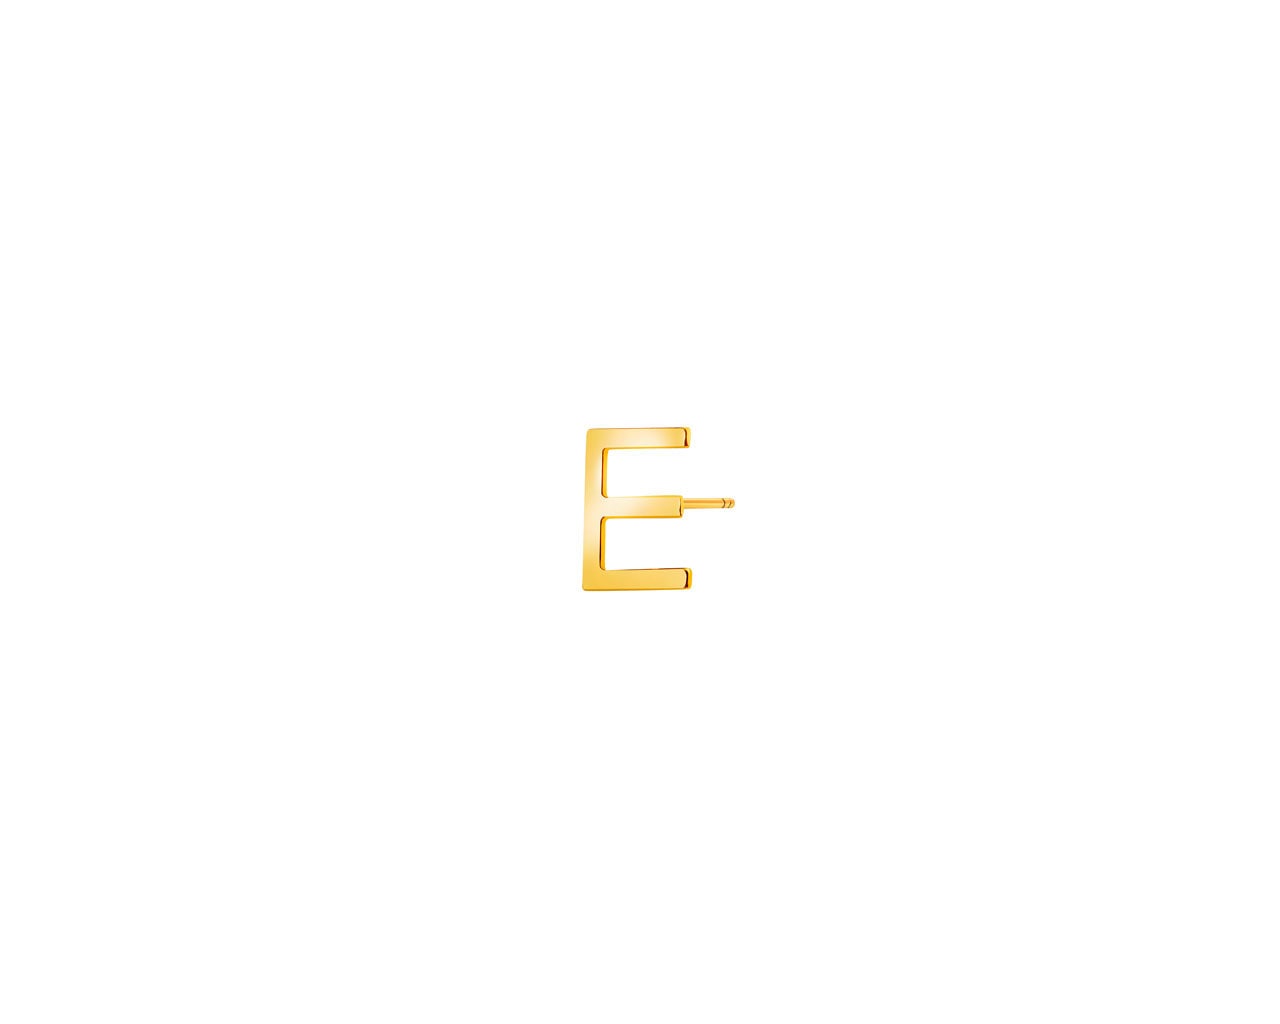 Złoty kolczyk - litera E